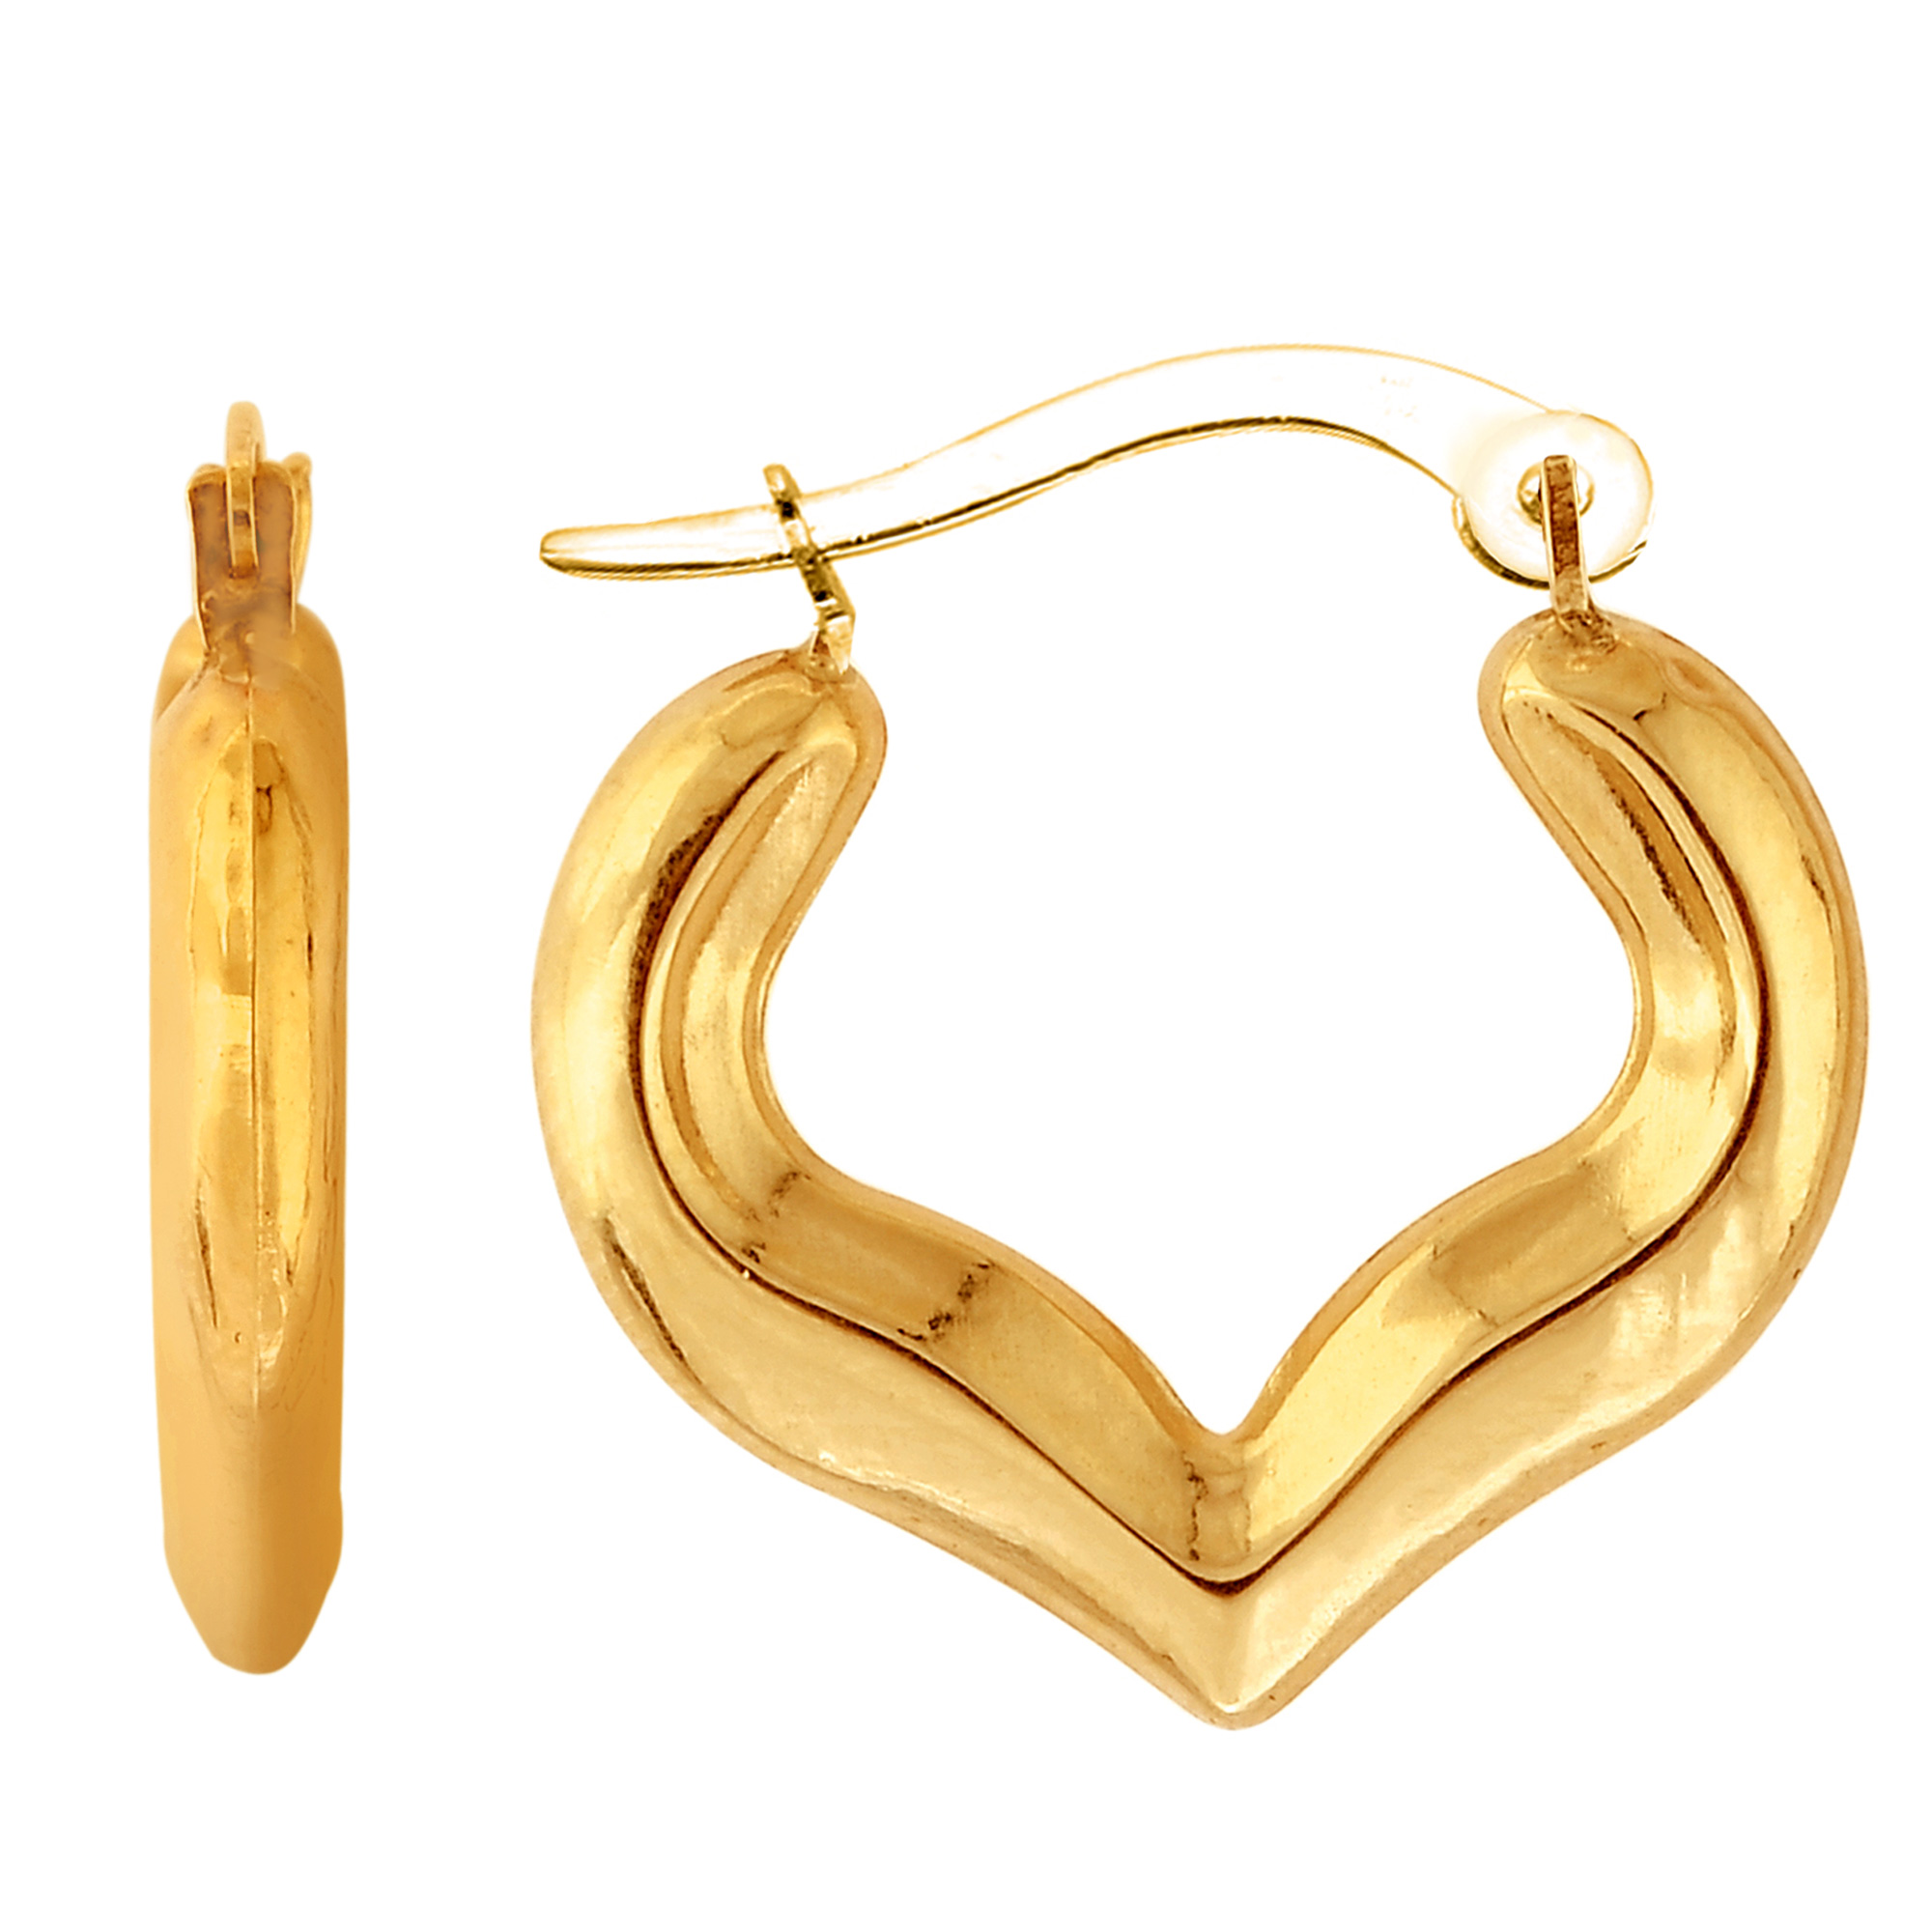 Jewelry Affairs 10k Yellow Gold Shiny Heart Shape Fancy Hoop Earrings, Diameter  18mm